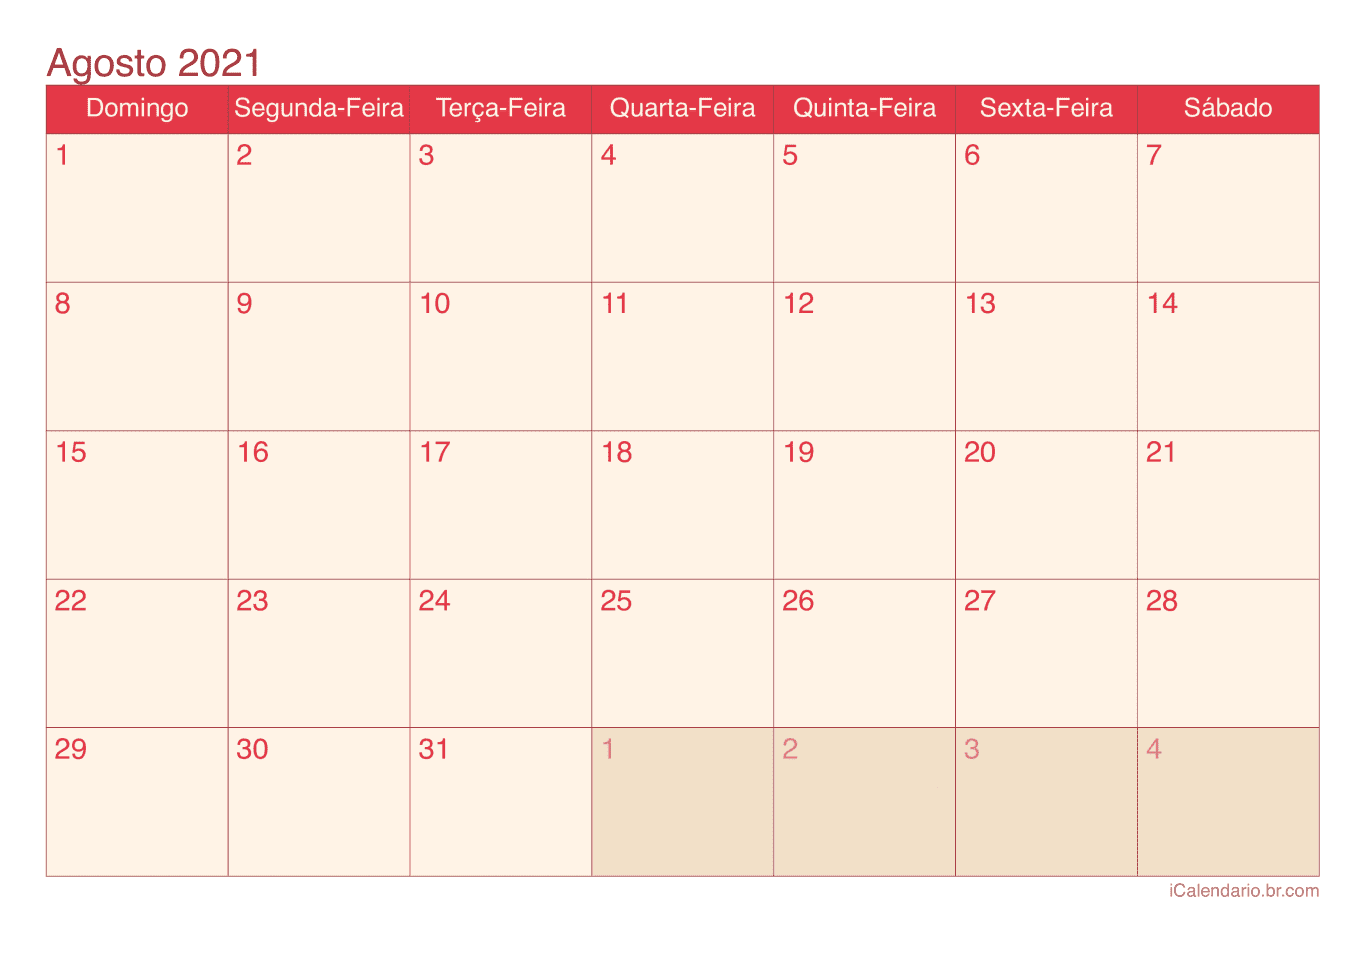 Calendário de agosto 2021 - Cherry